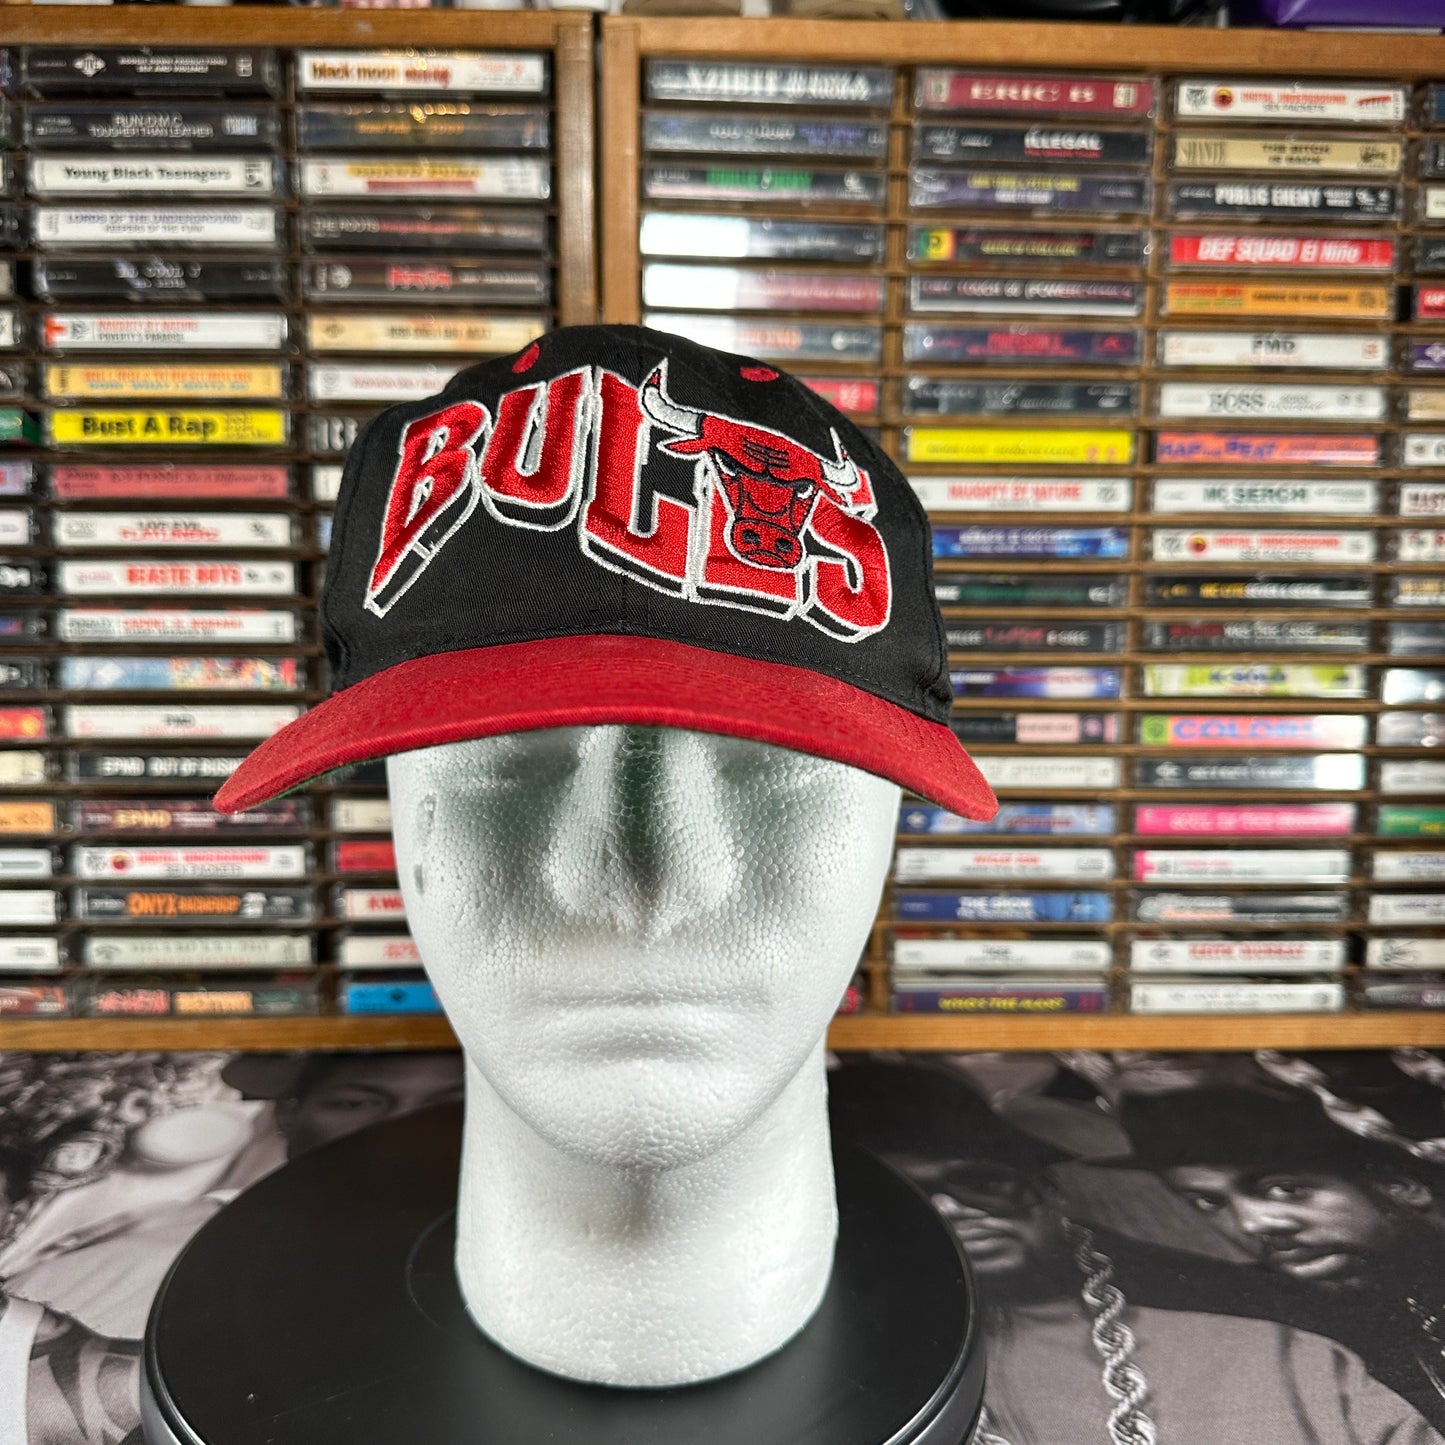 Vintage Chicago Bulls Vintage 90s Snapback Hat NBA The G Cap, Black & Red